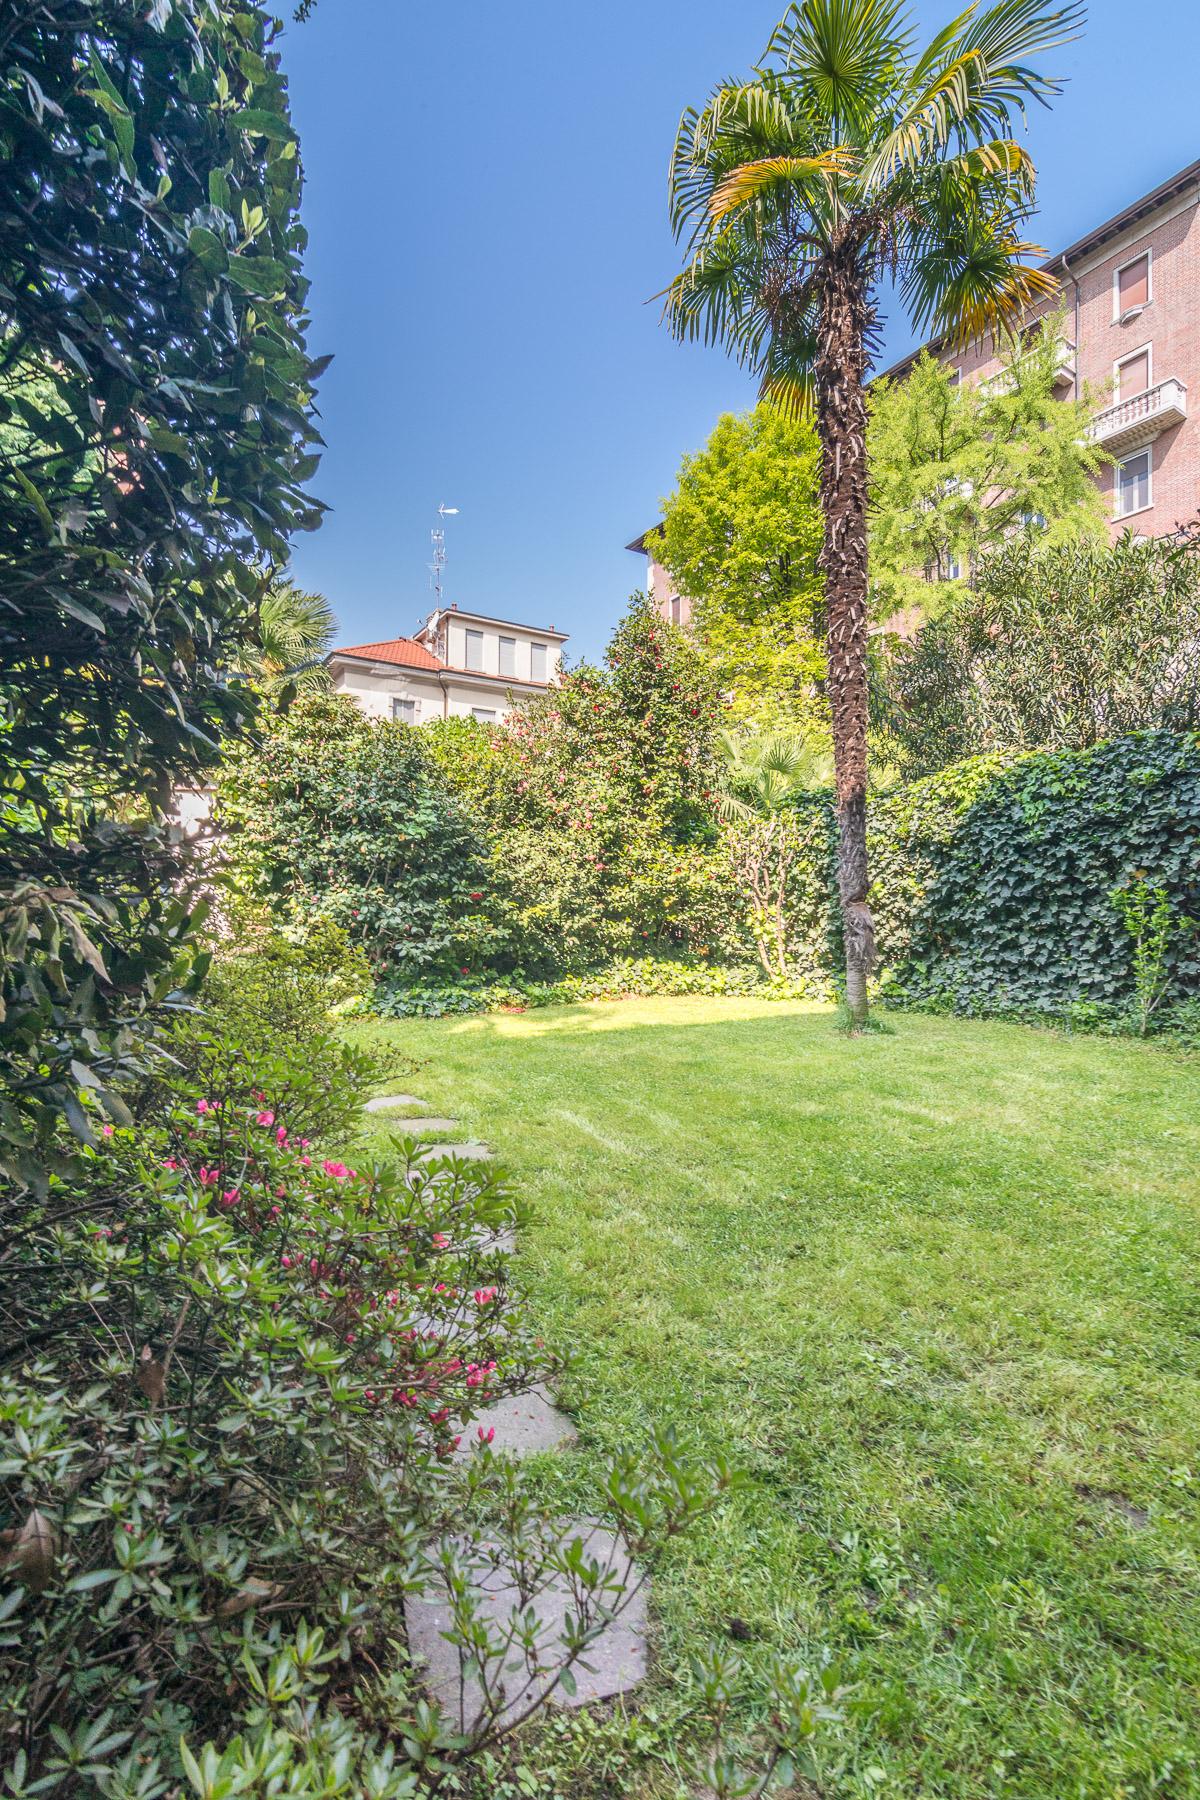 Villetta con giardino privato - 4